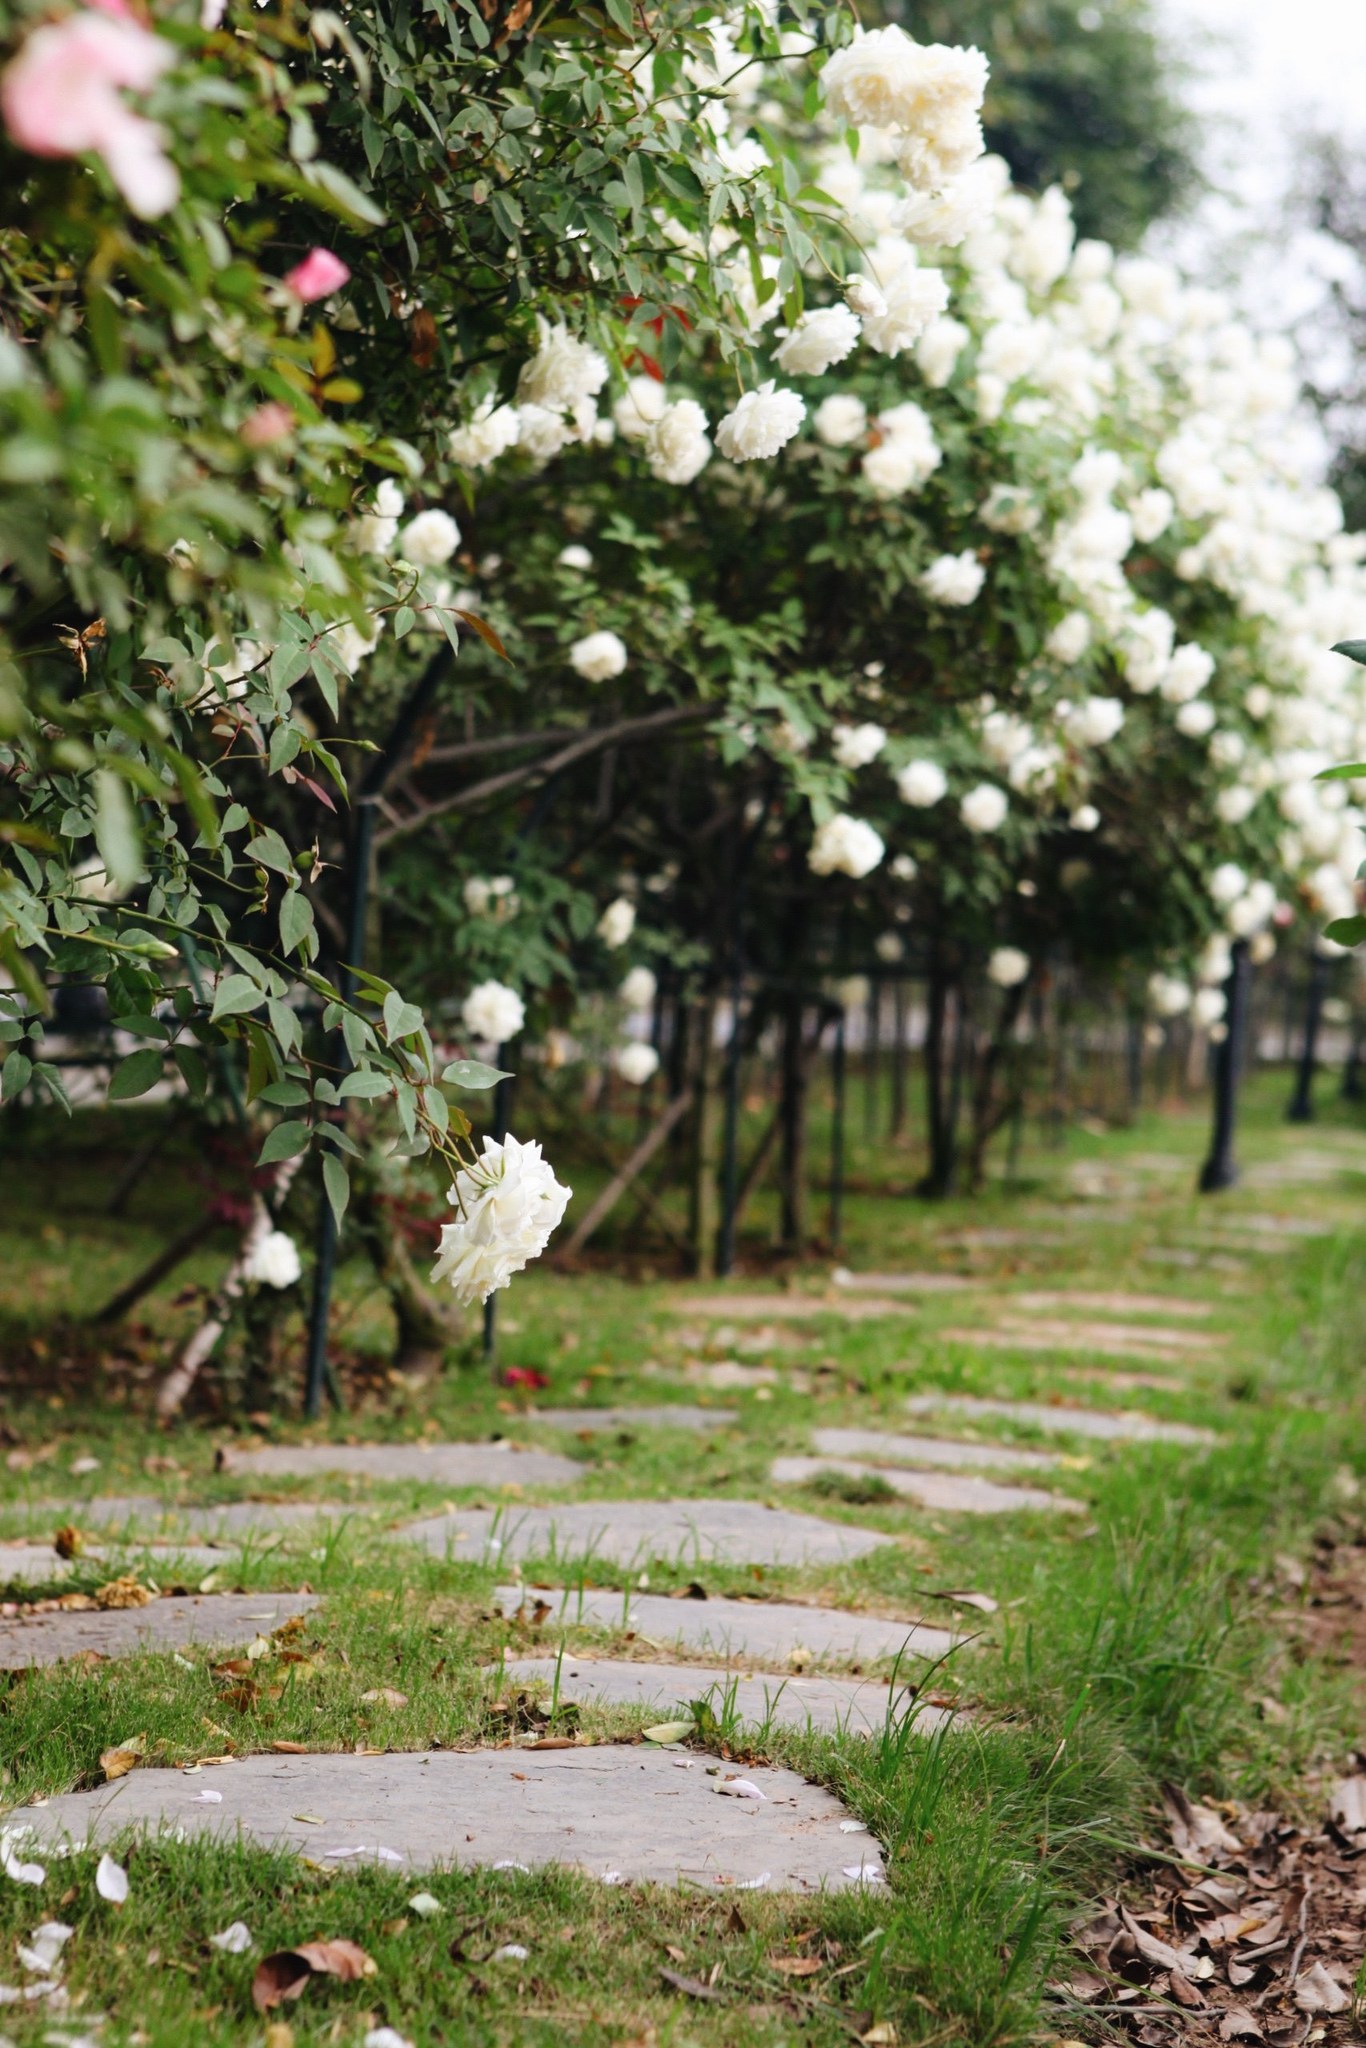 Trường đại học gây sốt với vườn hồng hàng trăm loại đẹp như cổ tích: Chỉ ngắm thôi cũng đã đầy cảm hứng học tập- Ảnh 7.